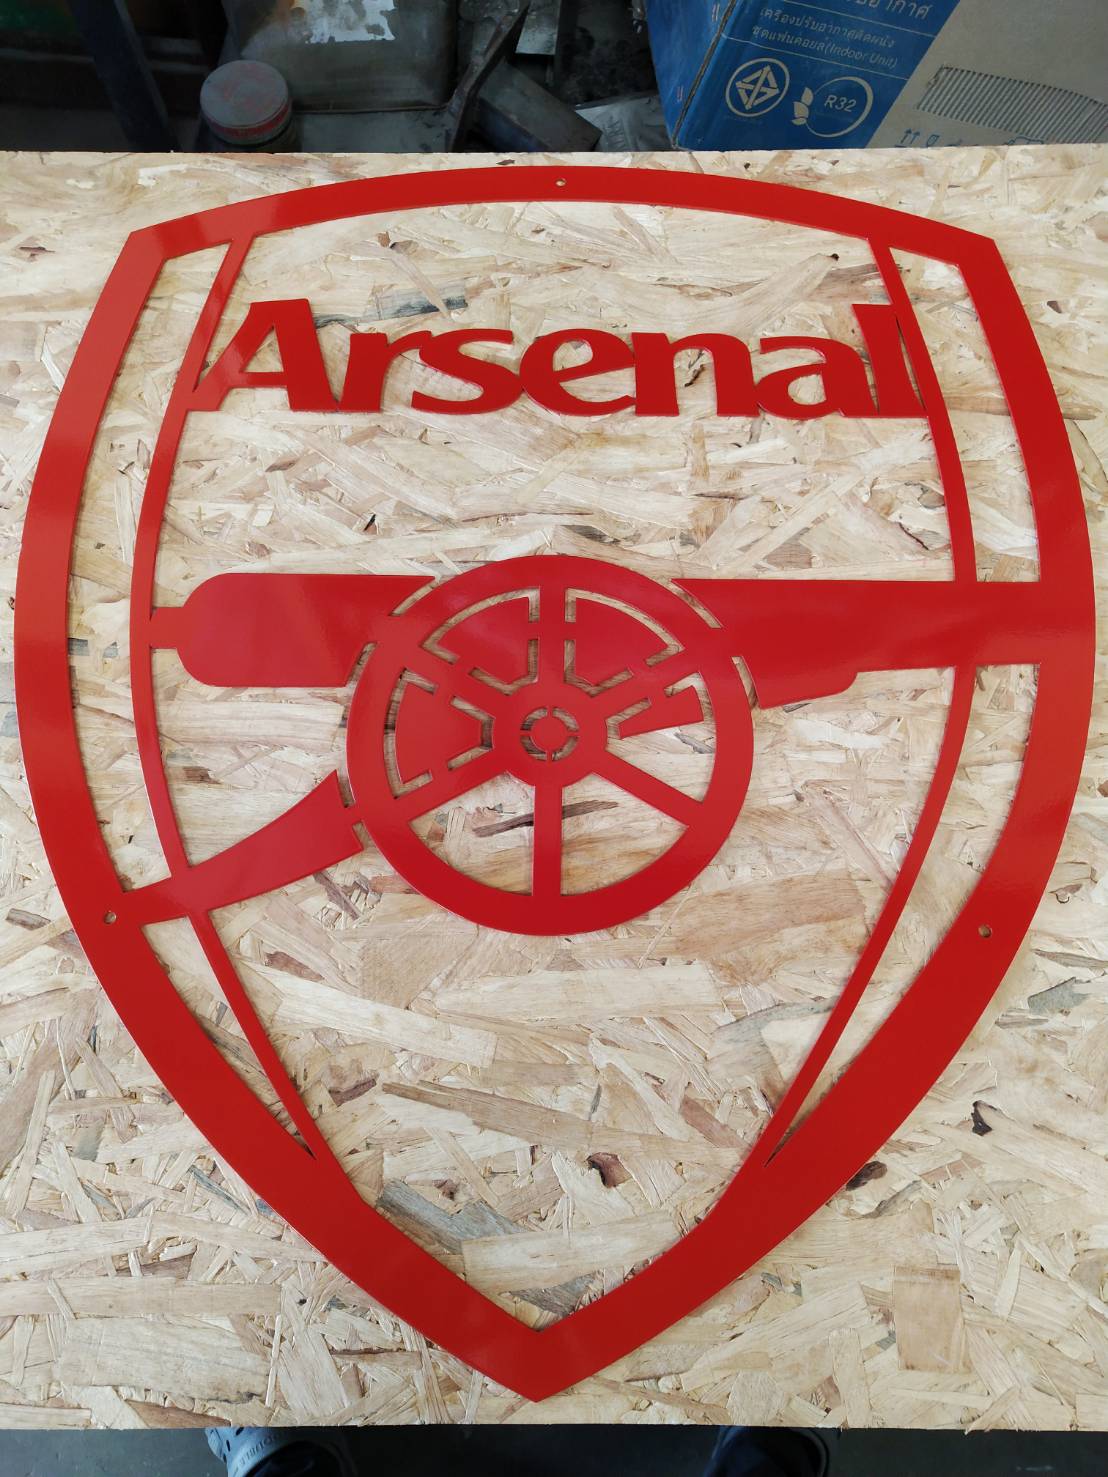 โลโก้ สโมสร อาร์เซนอล สโมสรฟุตบอลอาร์เซนอล Arsenal - ผลิตจากเหล็กหนา หนา 1.5 มิล 40*45 ซม. ฟรี มาร์คเลเซอร์ 1 ชิ้น